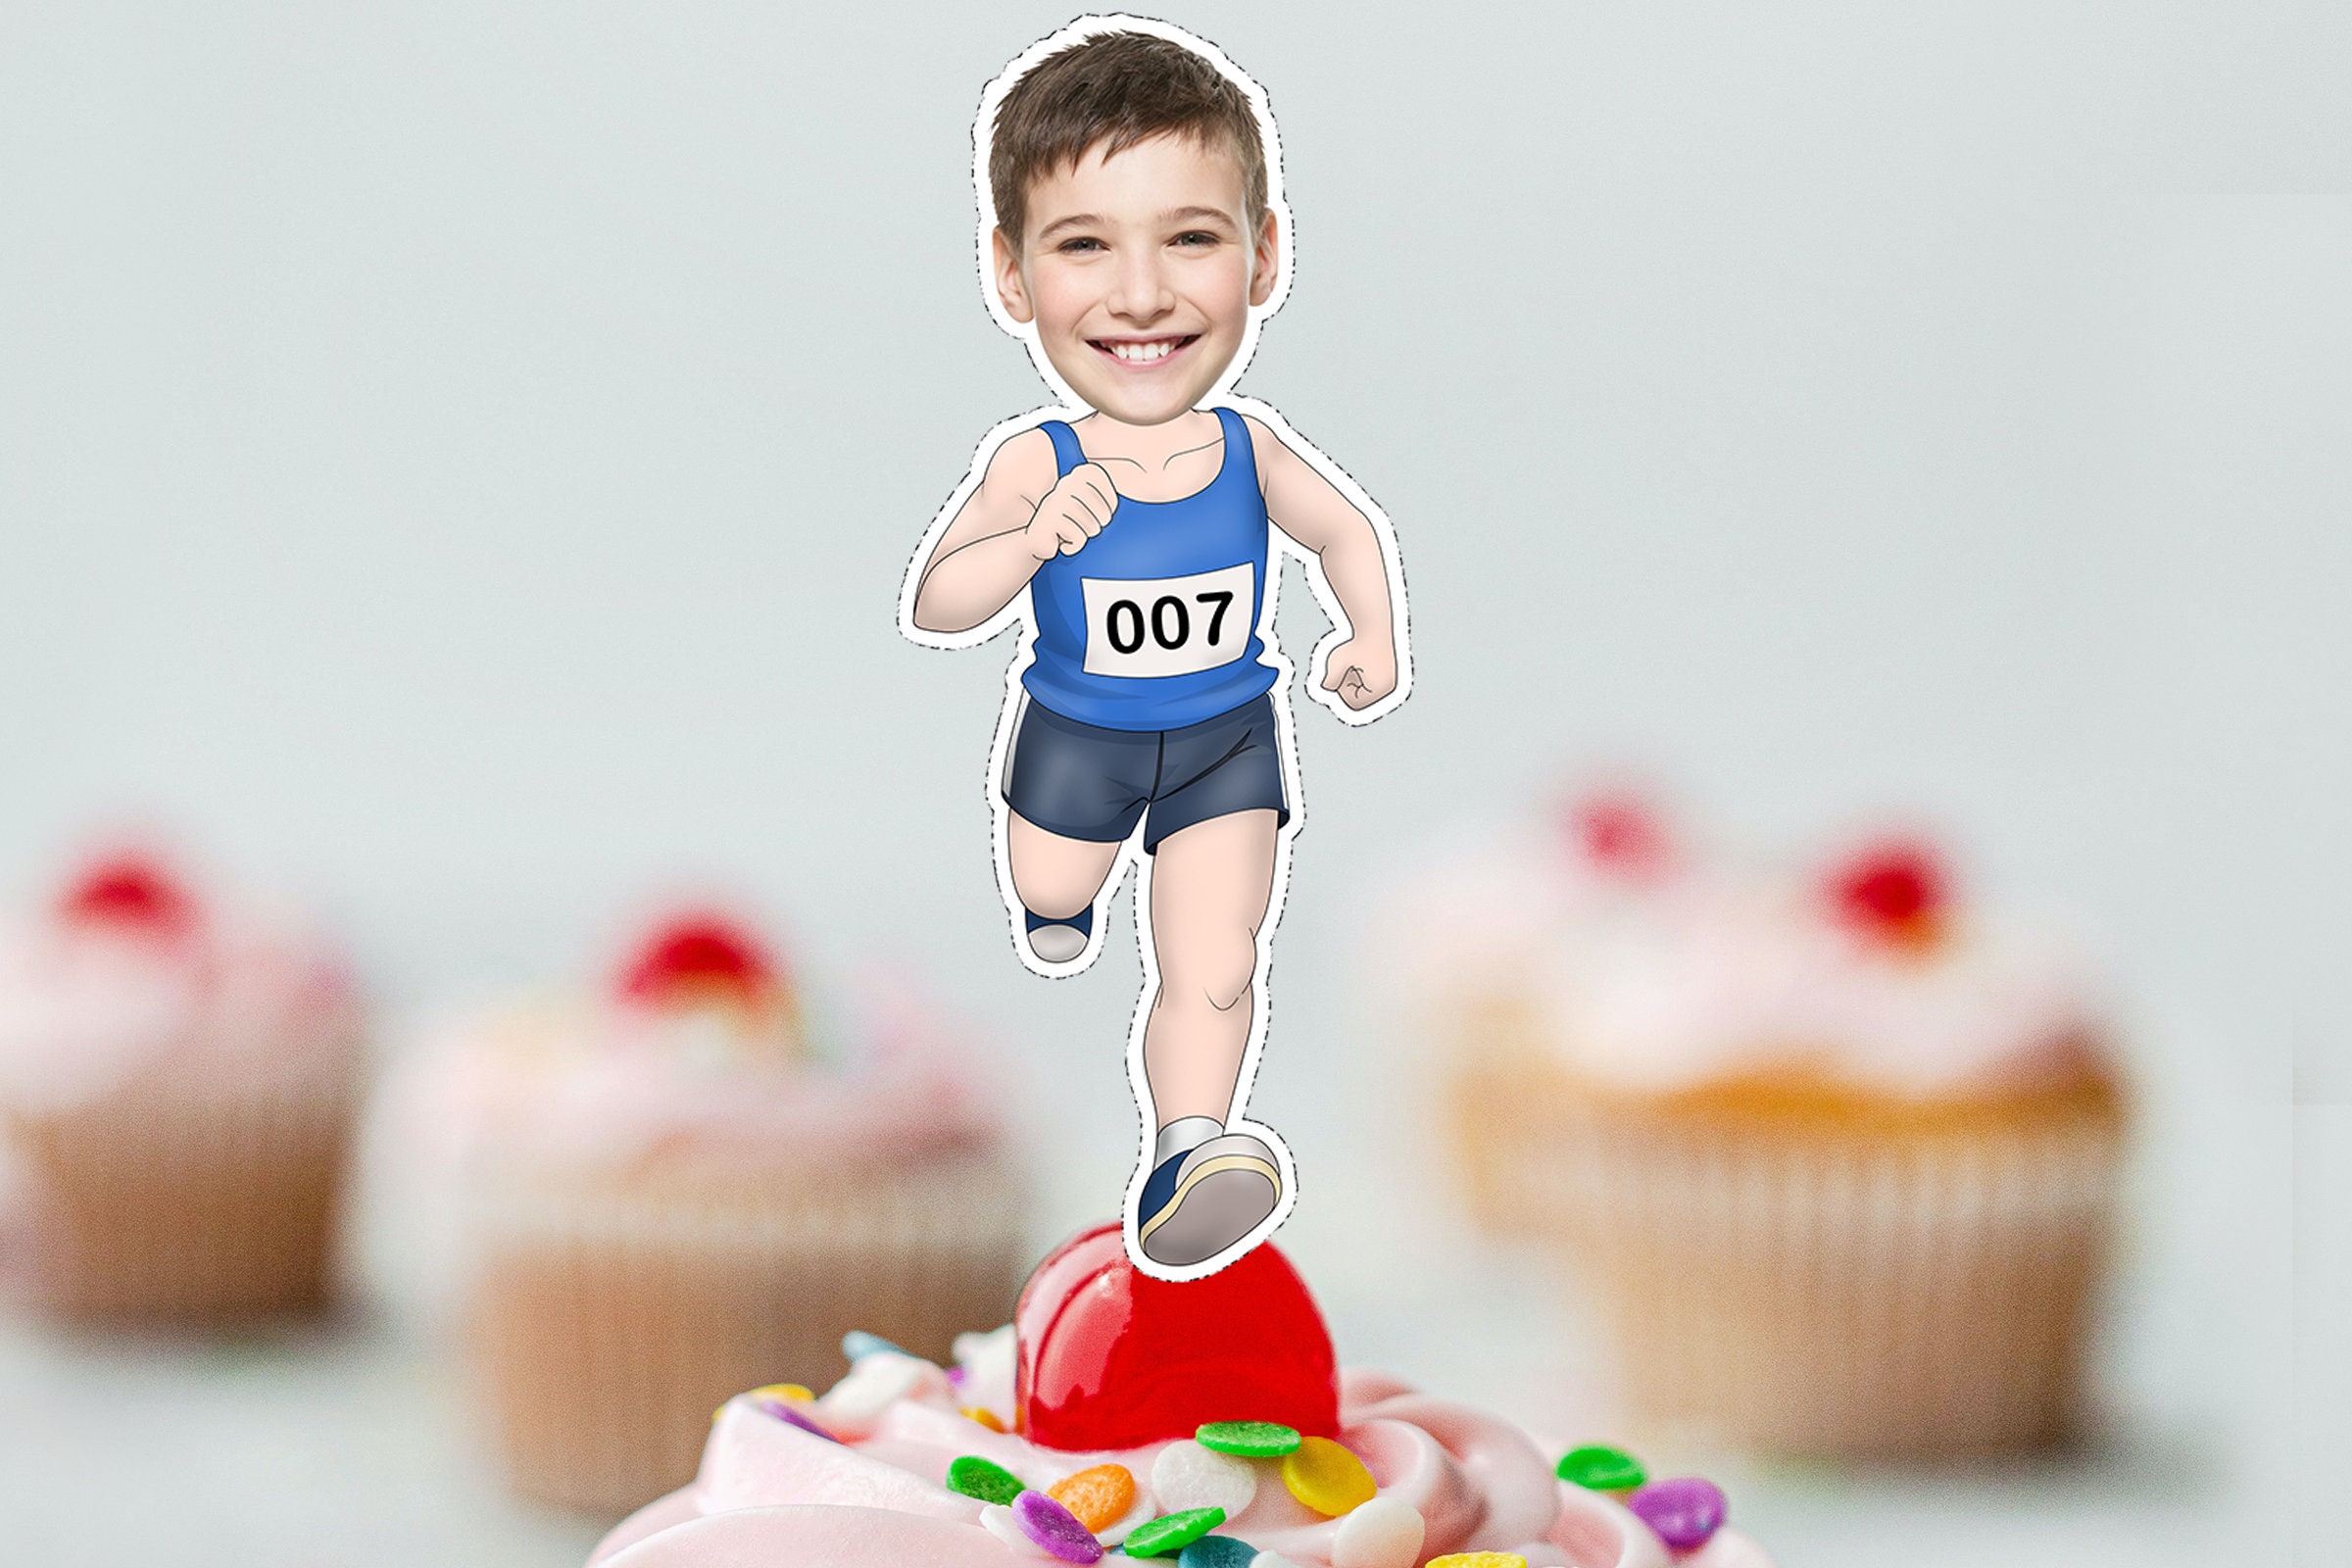 Sports Marathon Happy Birthday Cake Topper - Marathon Running Birthday  Party Cake Topper Supplies - Marathon Cross Country Party Cake Topper